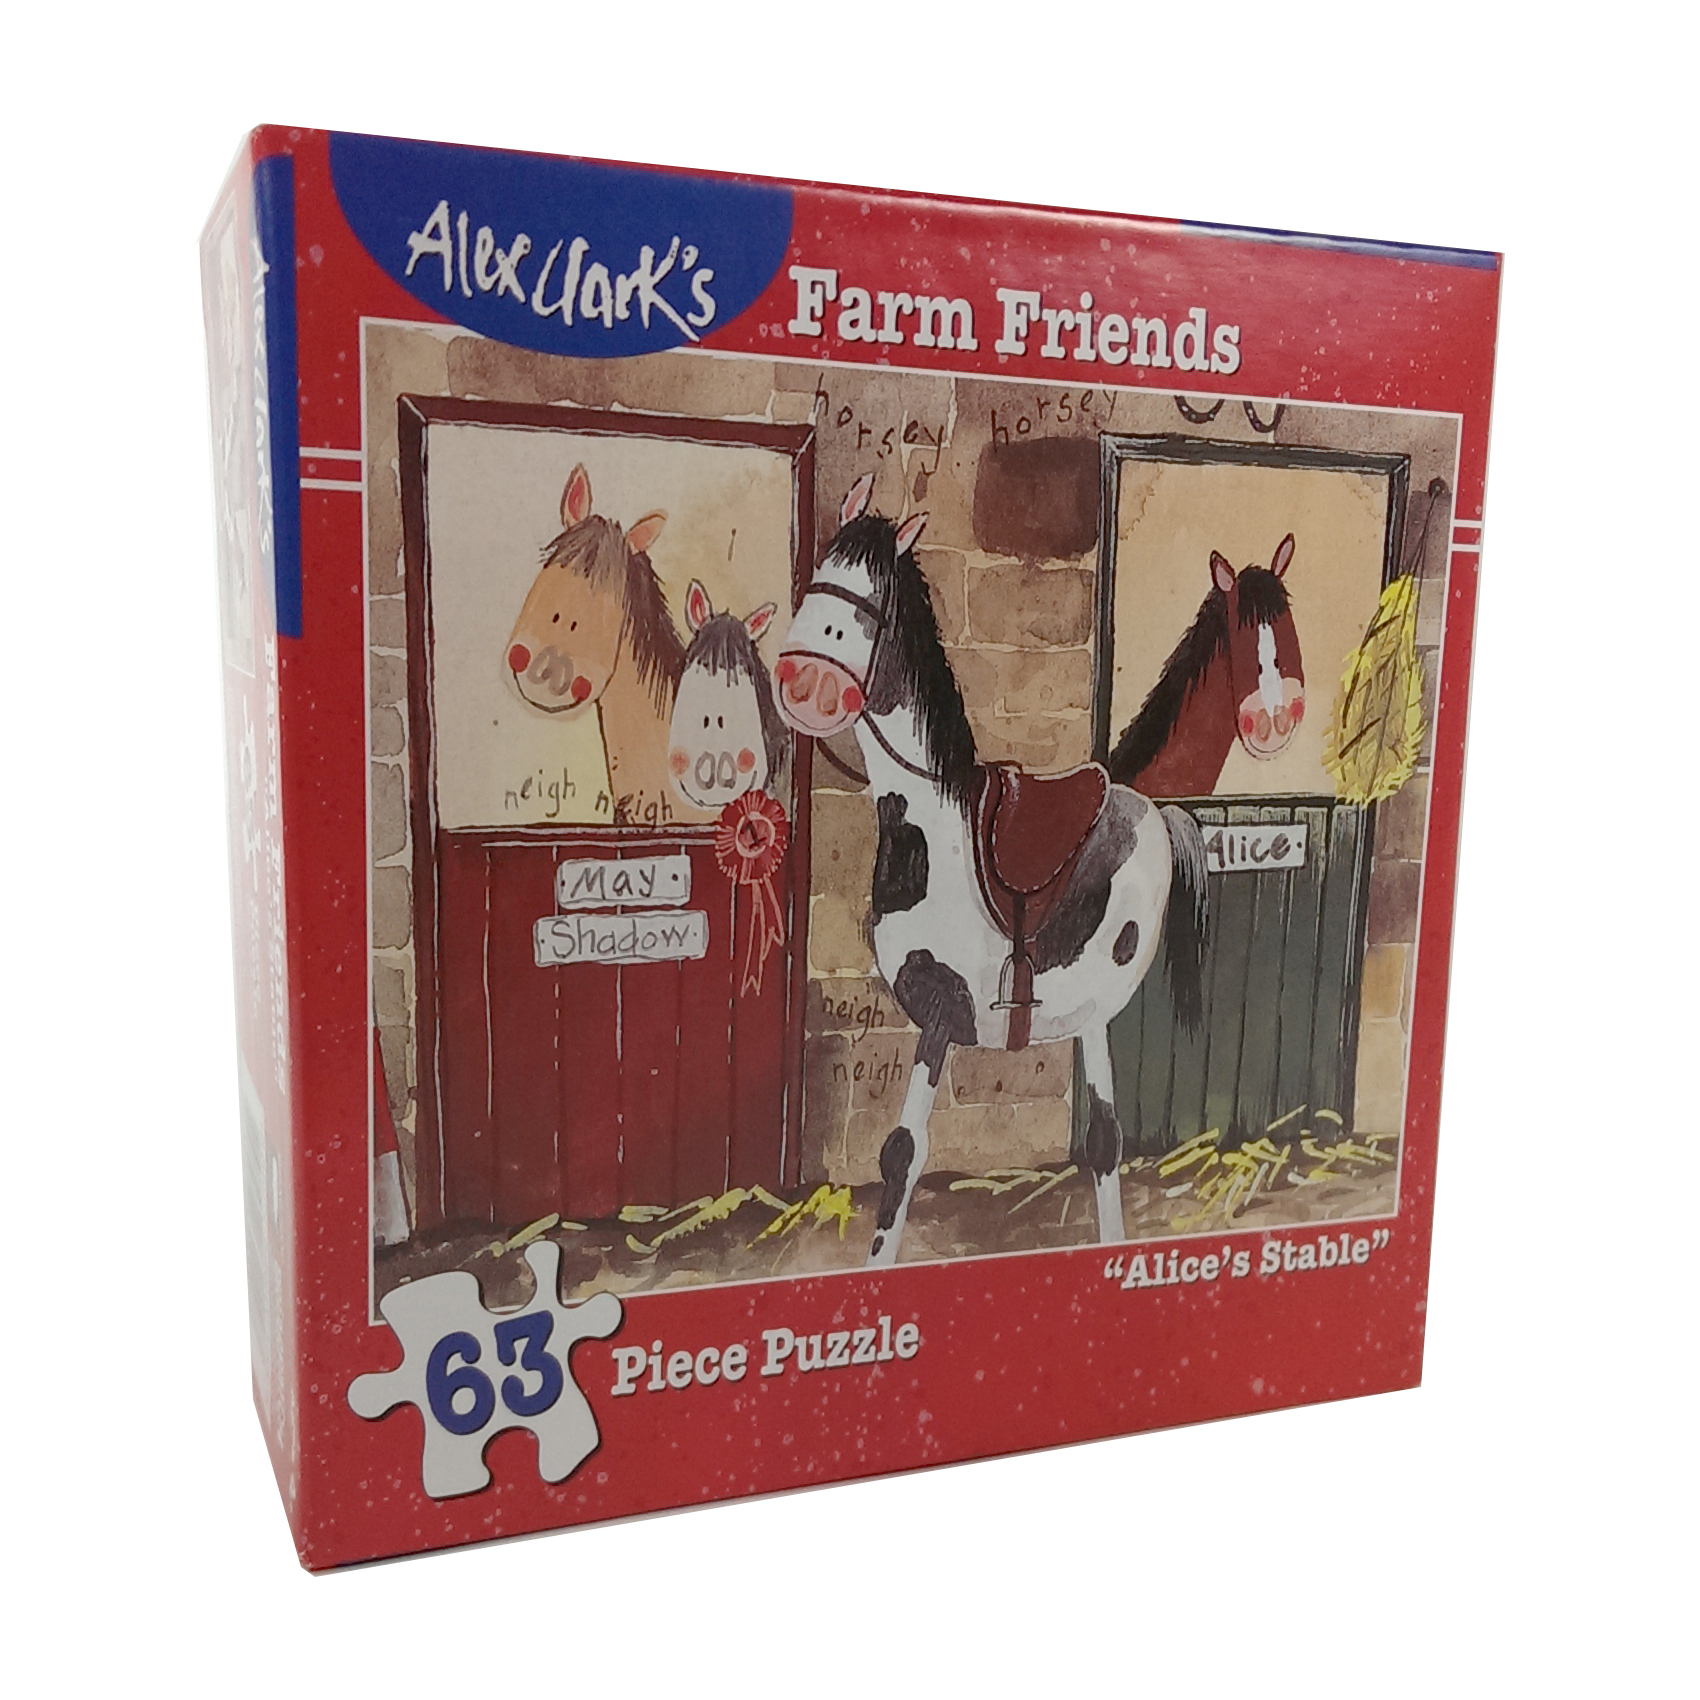 Briarpatch Alex Clark's Farm Friends - Alice's Stable Puzzle: 63 Pcs